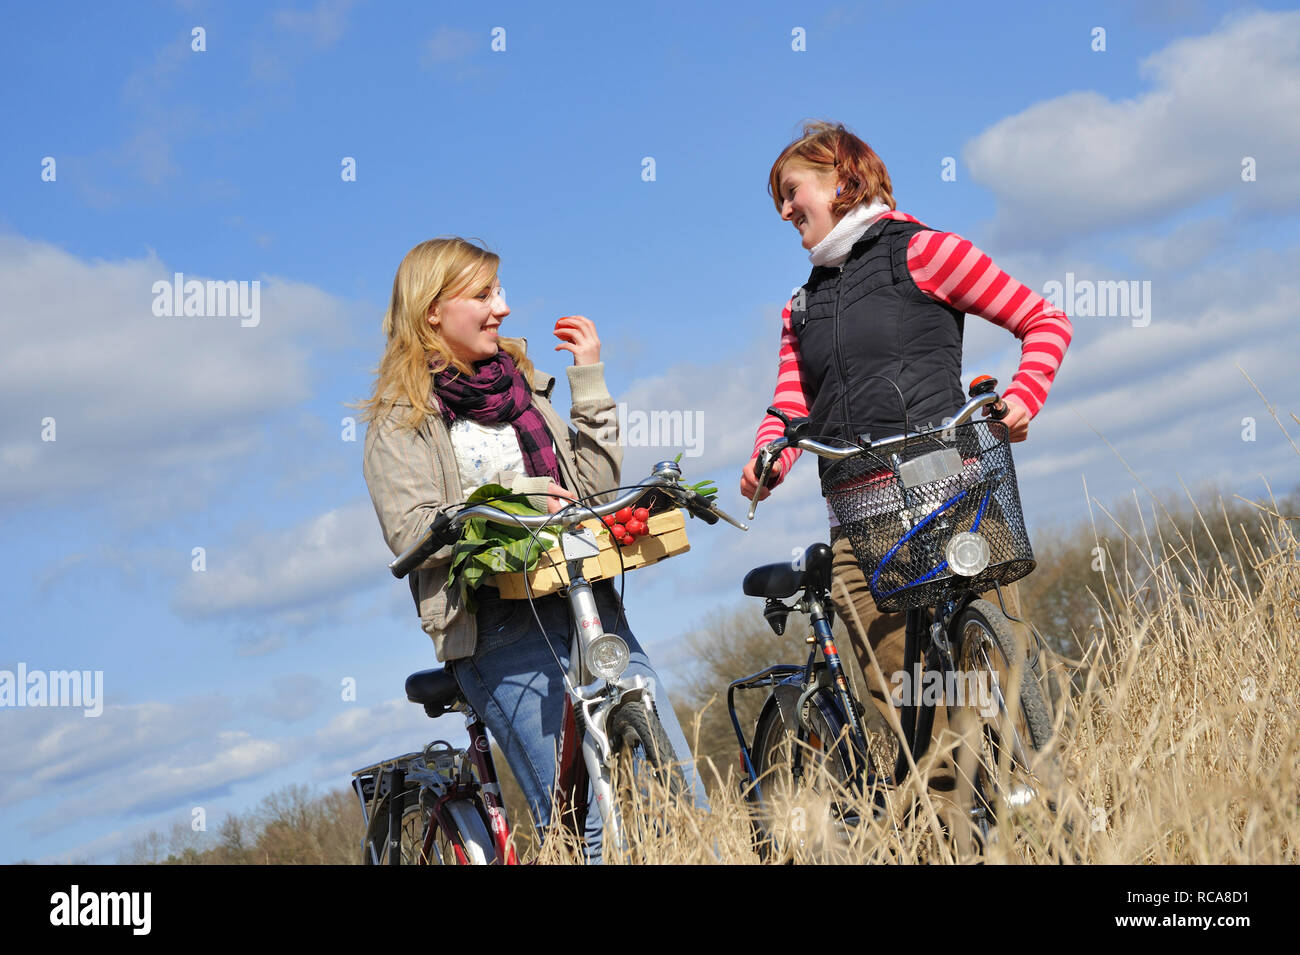 Zwei Frauen mit Fahrrad und jungendliche Gemüsekorb - junges Gemüse | deux jeunes femmes avec leur vélo et un panier de légumes Banque D'Images